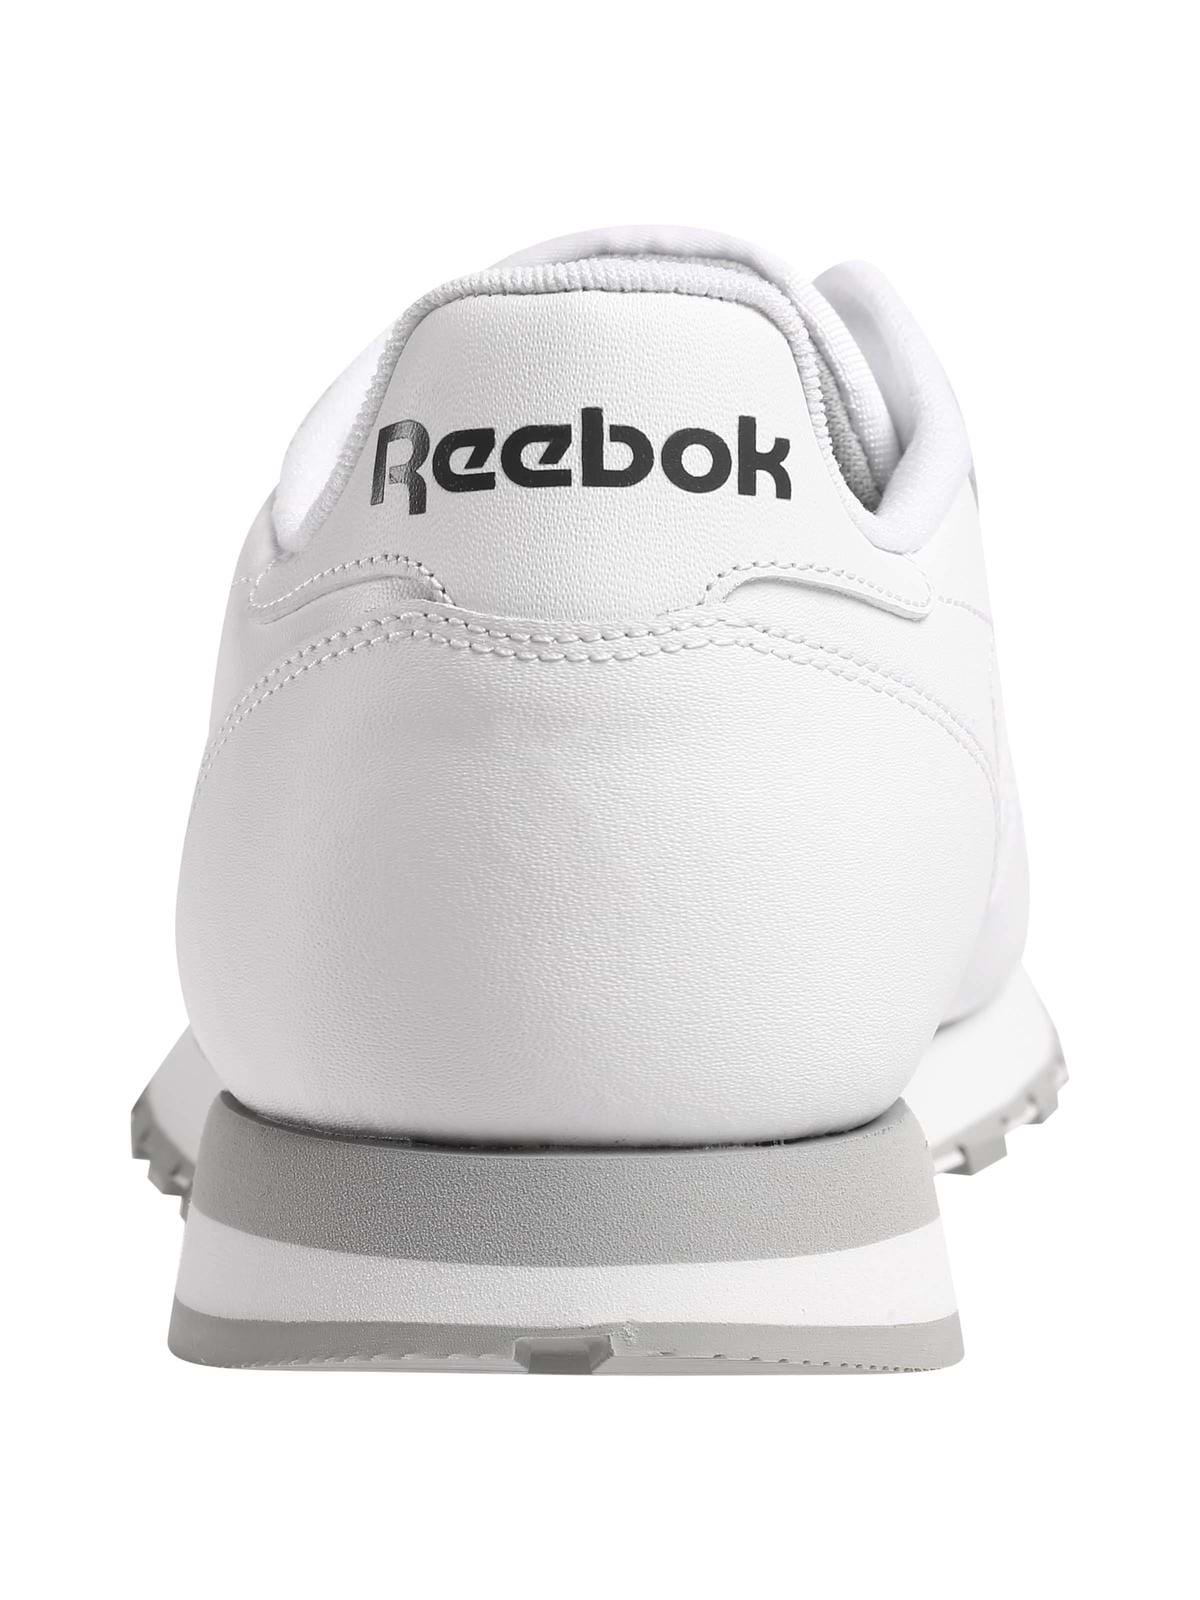 נעלי סניקרס CLASSIC LEATHER / גברים- Reebok|ריבוק